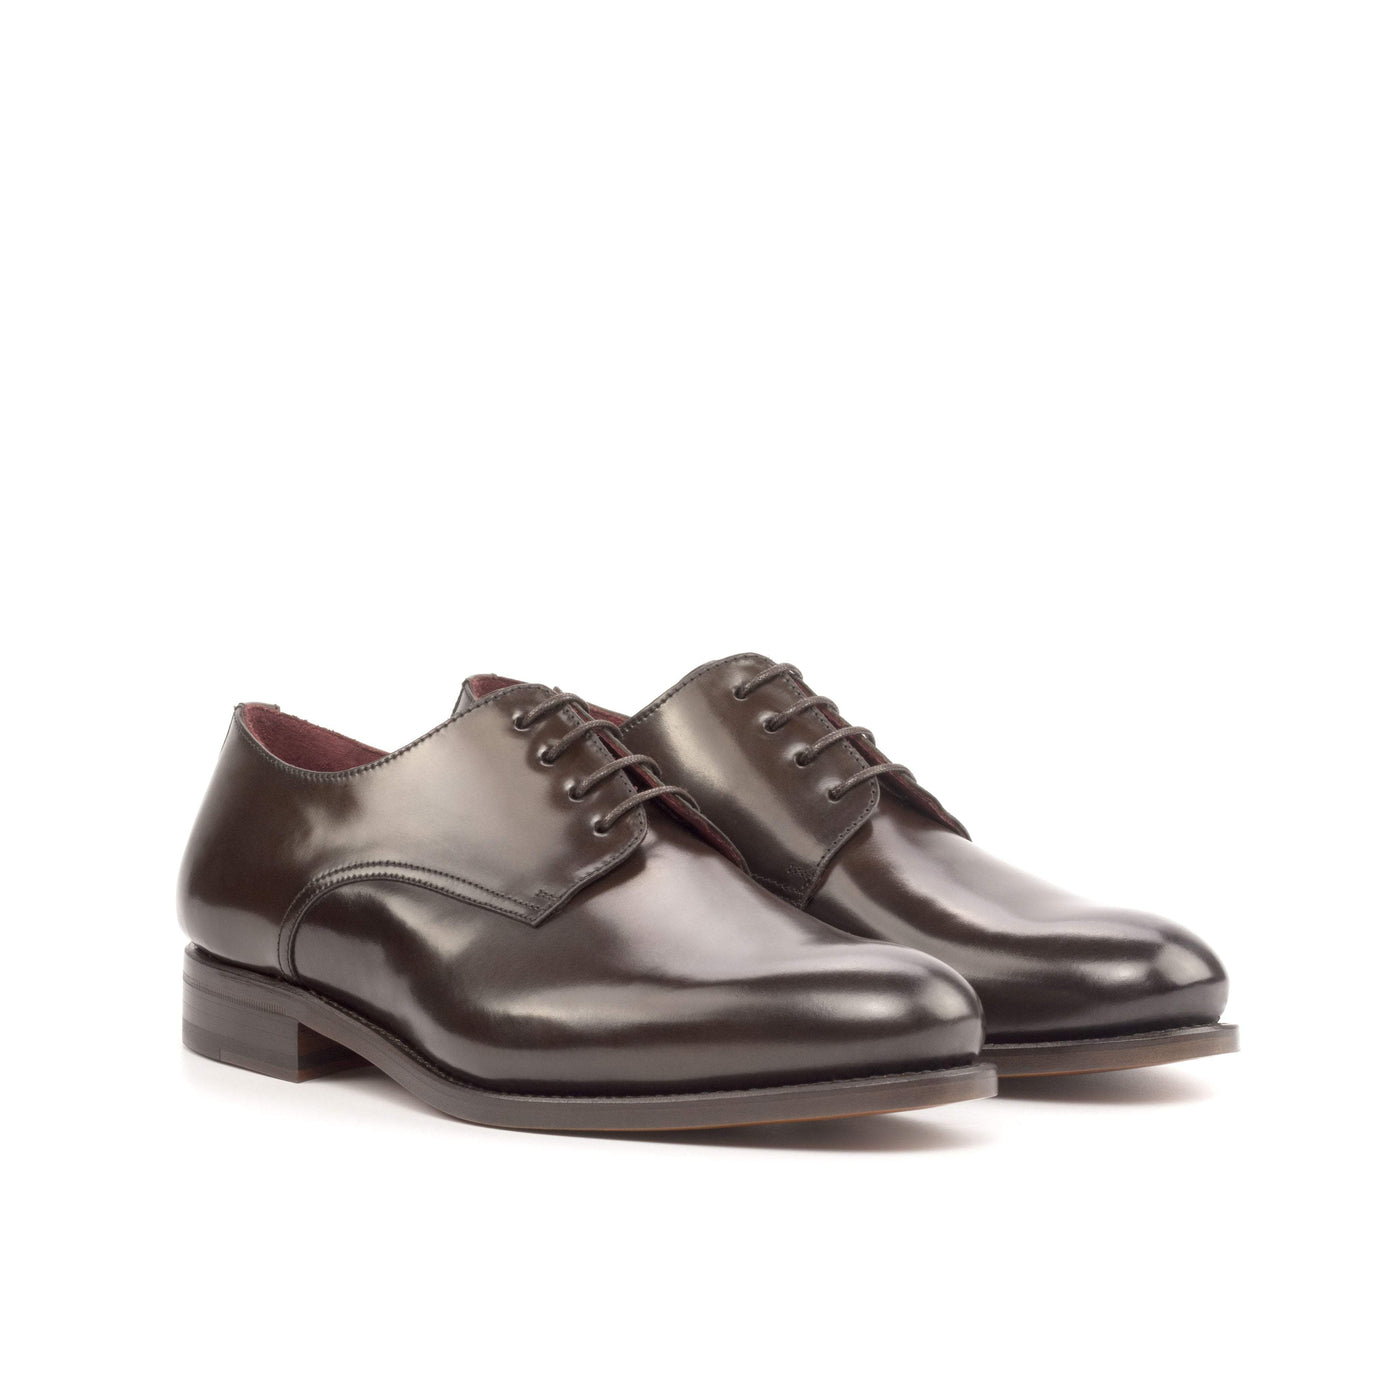 Men's Derby Shoes Leather Goodyear Welt Dark Brown 4919 3- MERRIMIUM